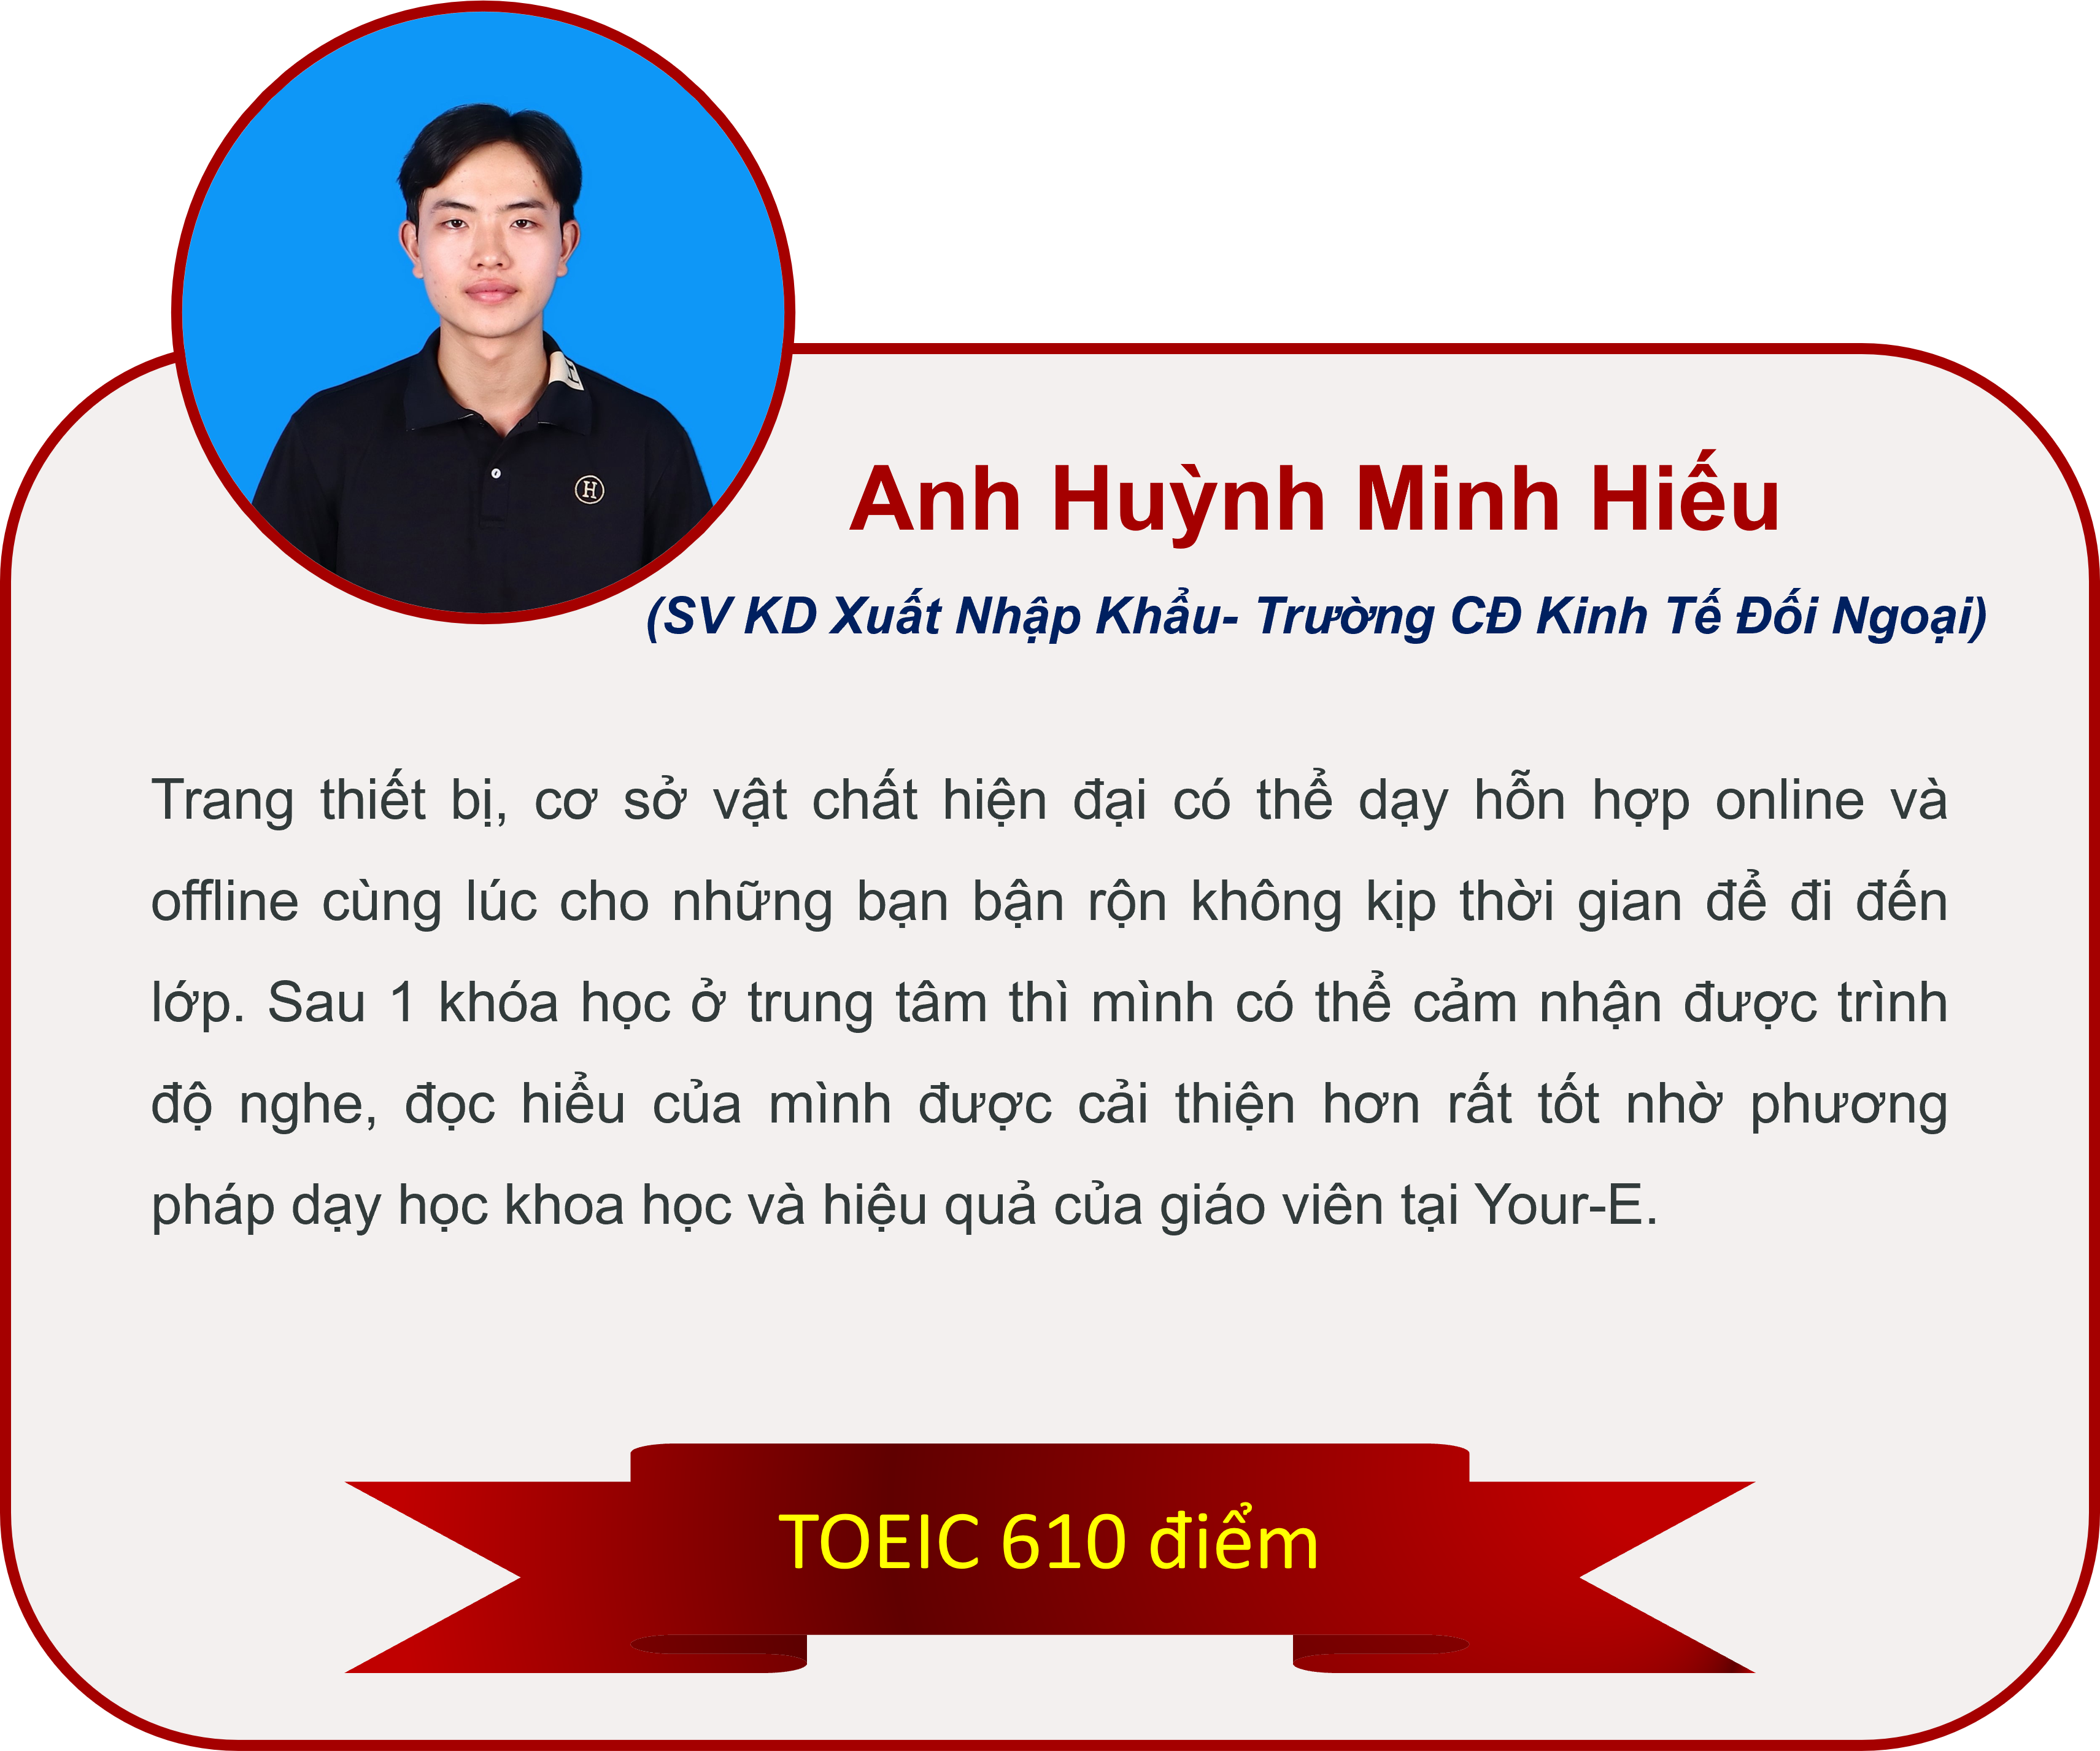 Huynh Minh Hieu 2 hv TOEIC